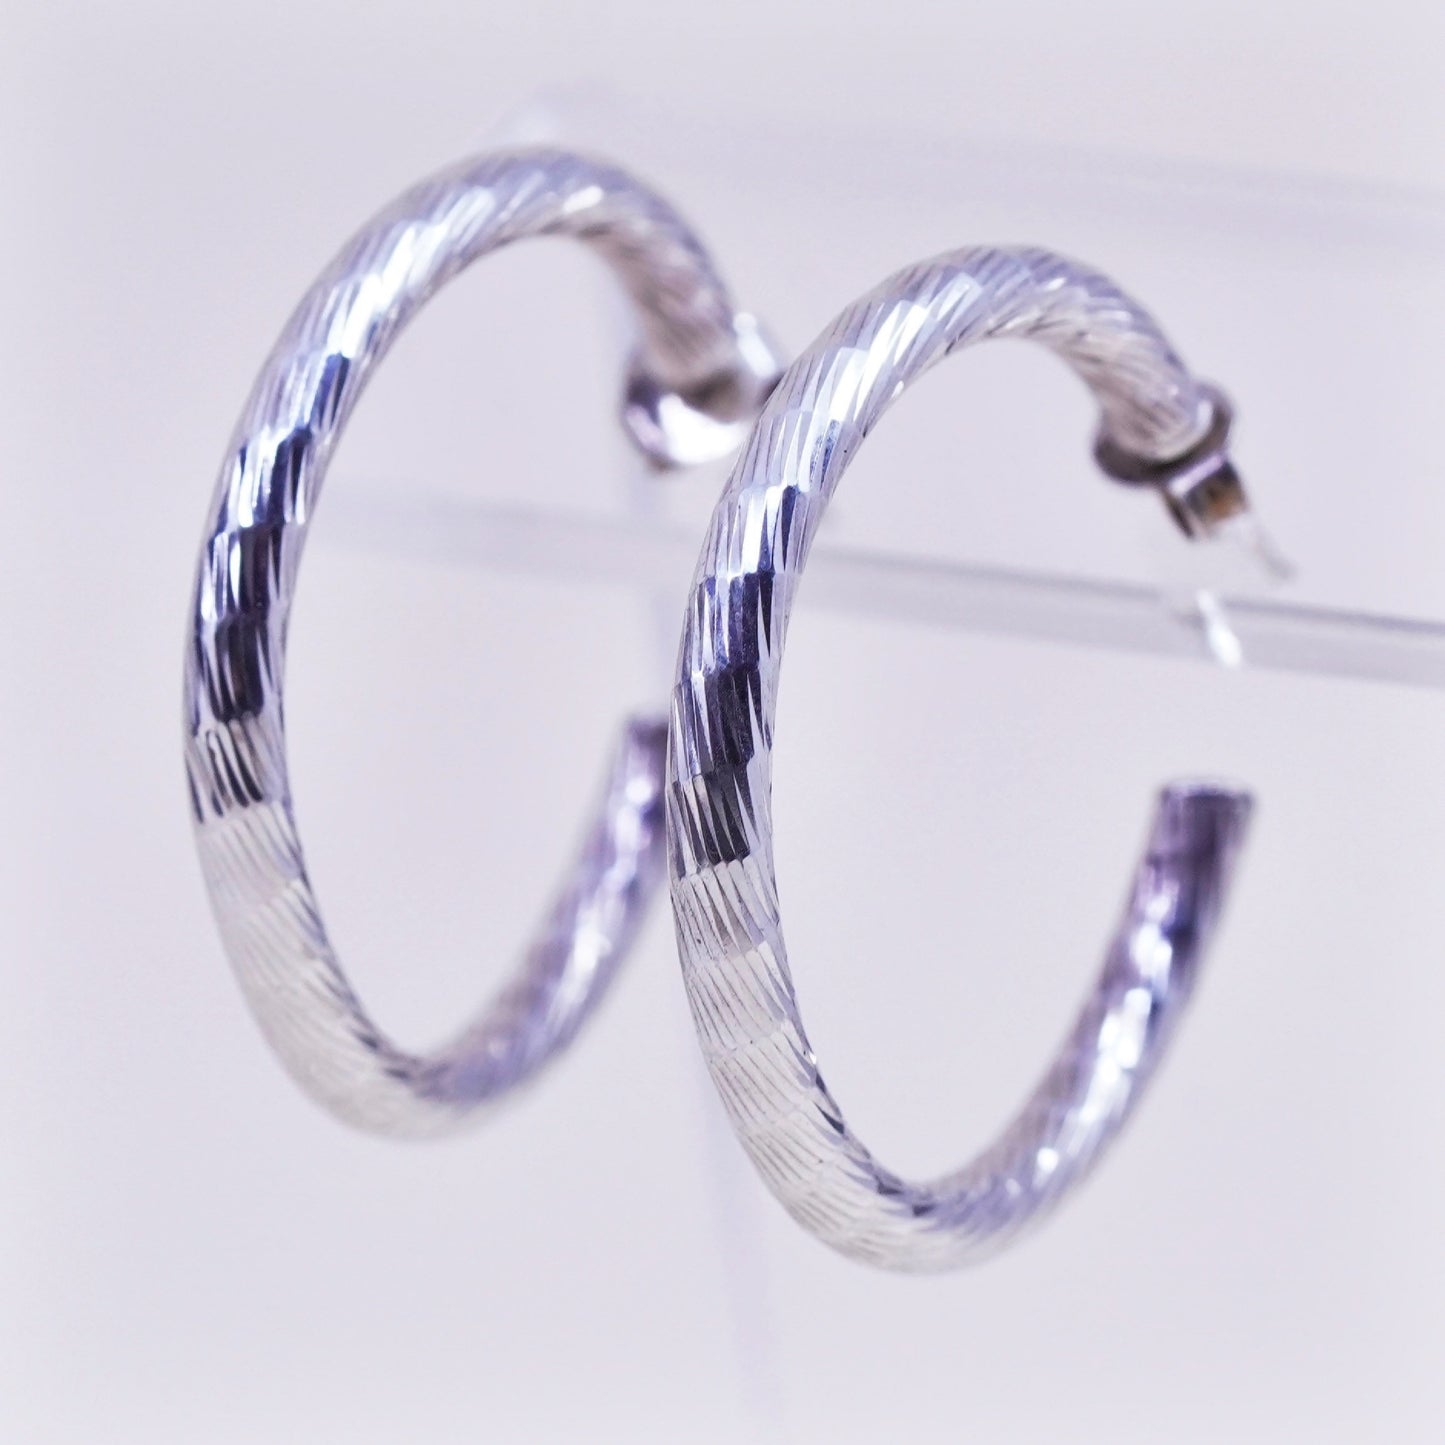 1.25” Vintage sterling 925 silver earrings, textured minimalist primitive hoops